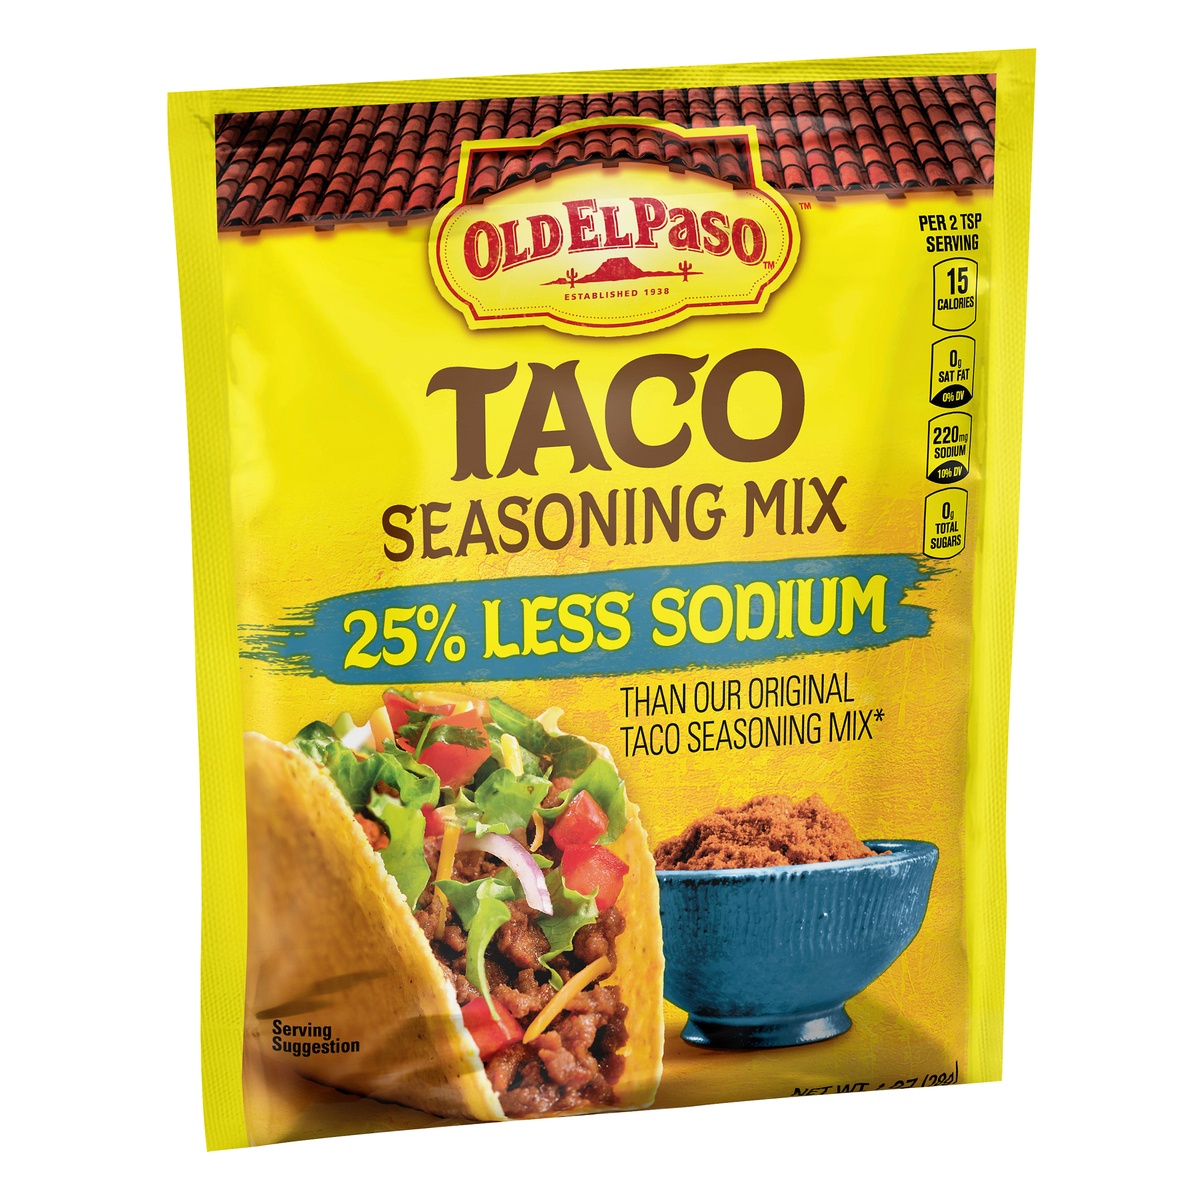 slide 2 of 10, Old El Paso Taco Seasoning Mix 25% Less Sodium Packet, 1 oz